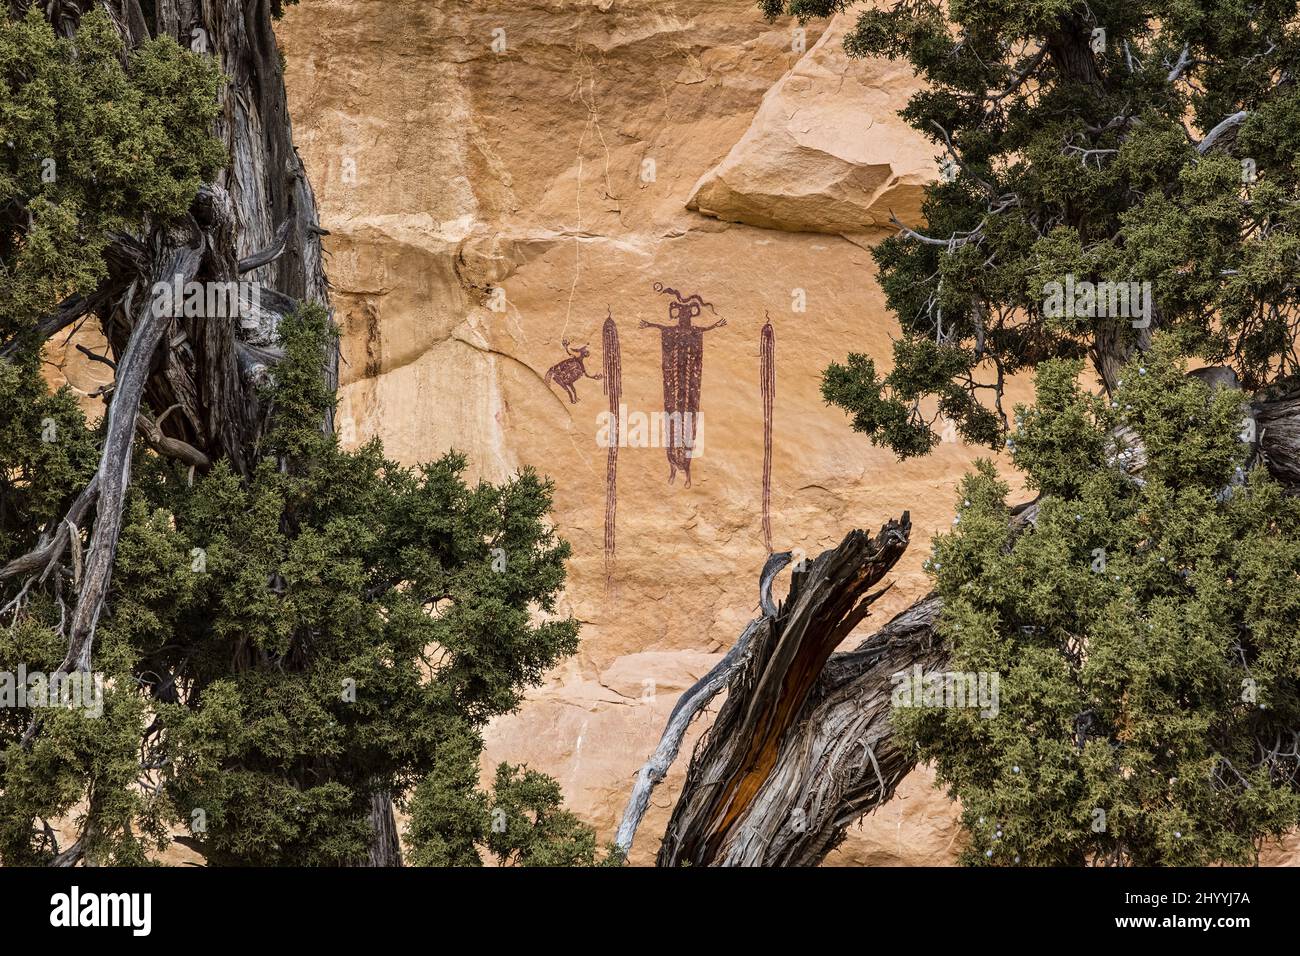 Ce panneau d'art rupestre de style Barrier Canyon se trouve dans la région de San Rafael Swell dans l'Utah, connue sous le nom de Head of Sinbad. Ces pictogrammes étaient pai Banque D'Images